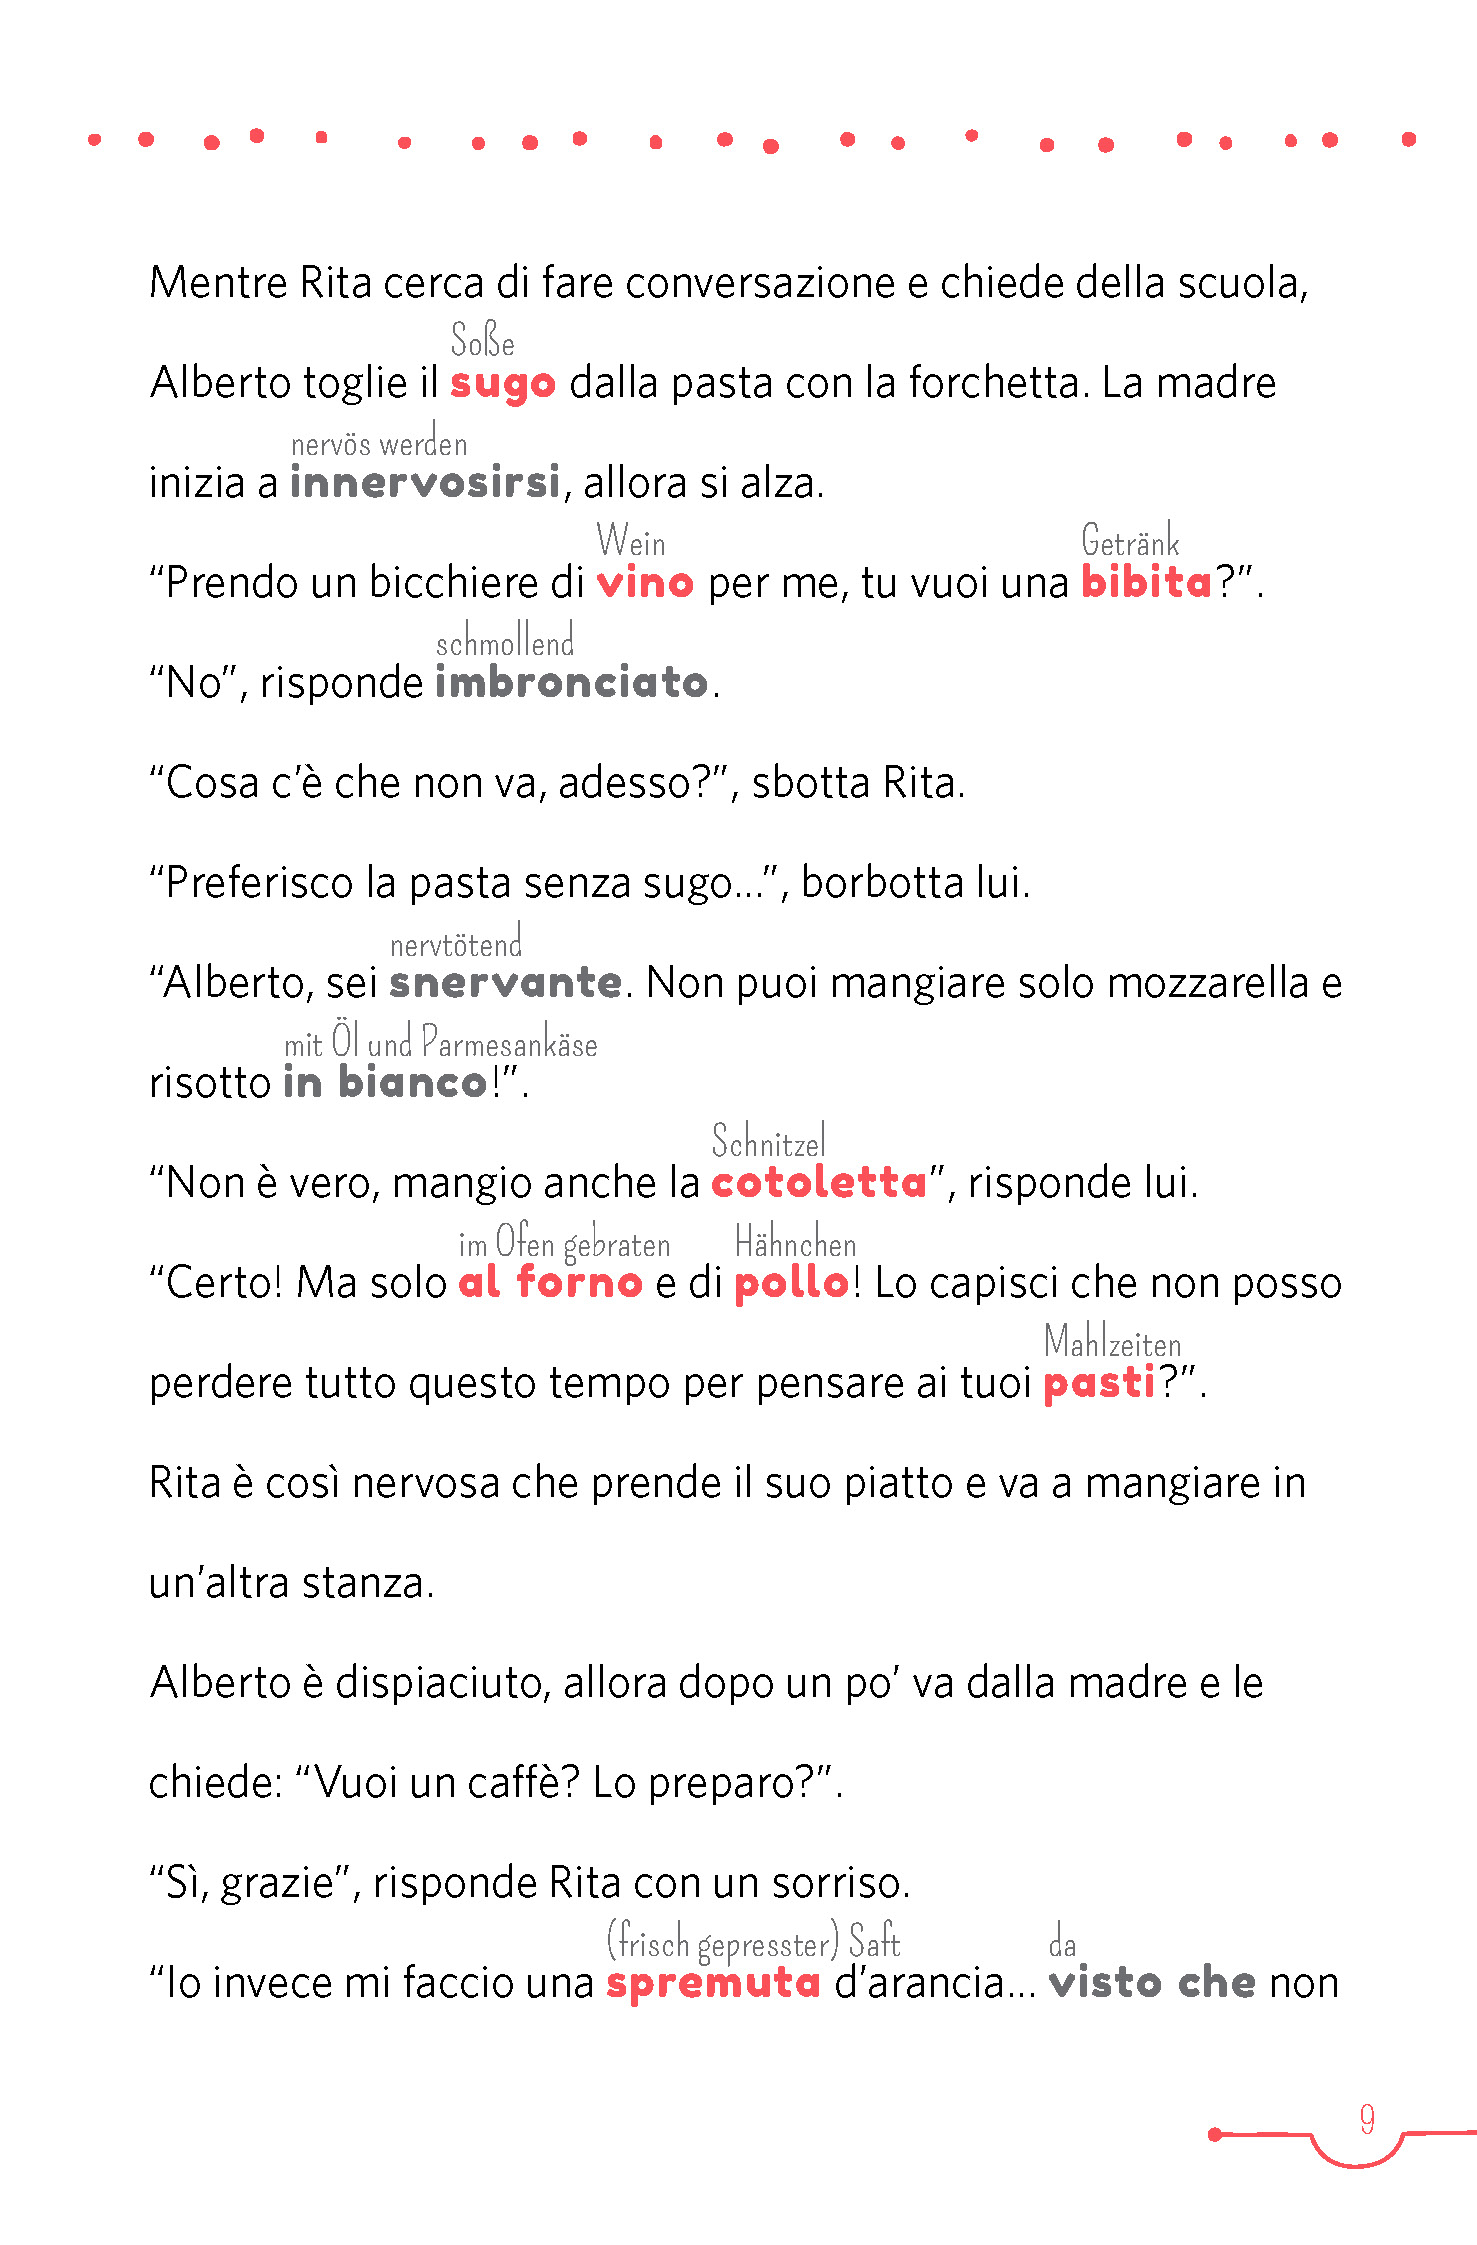 PONS 5-Minuten-Lektüre Italienisch A2 - A tavola con amore